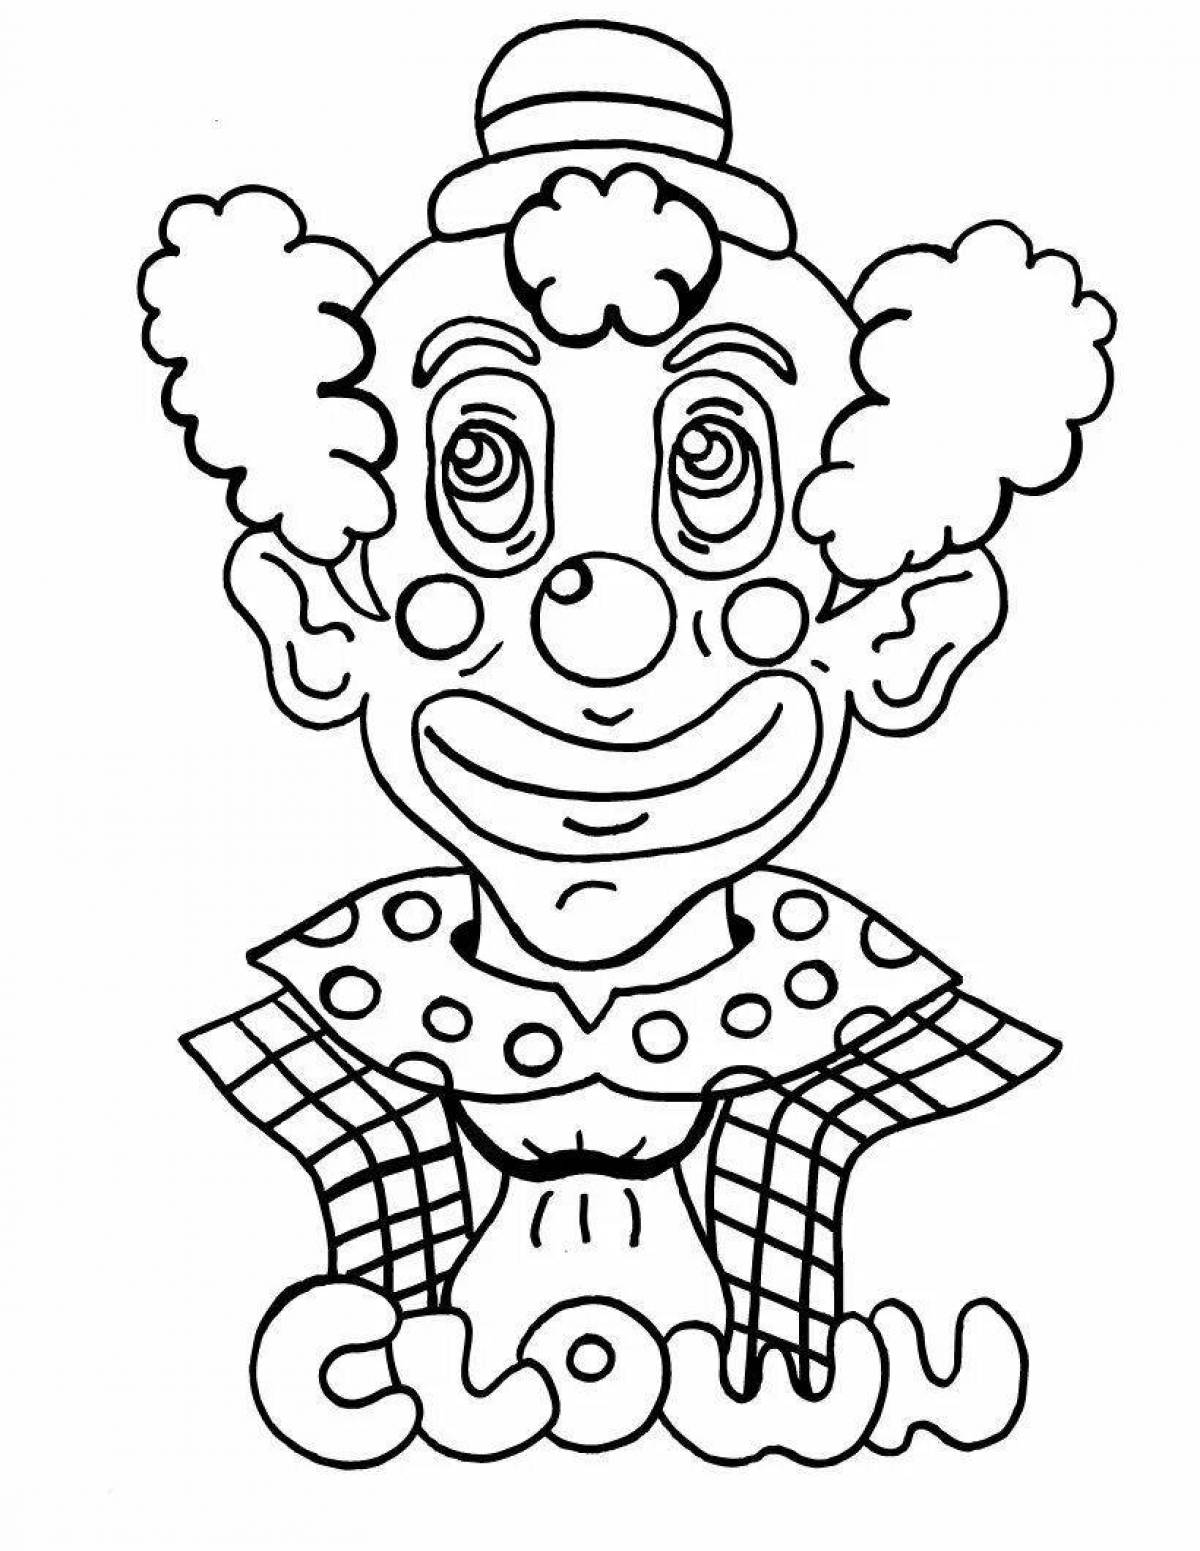 Развлекательная раскраска забавный клоун для детей